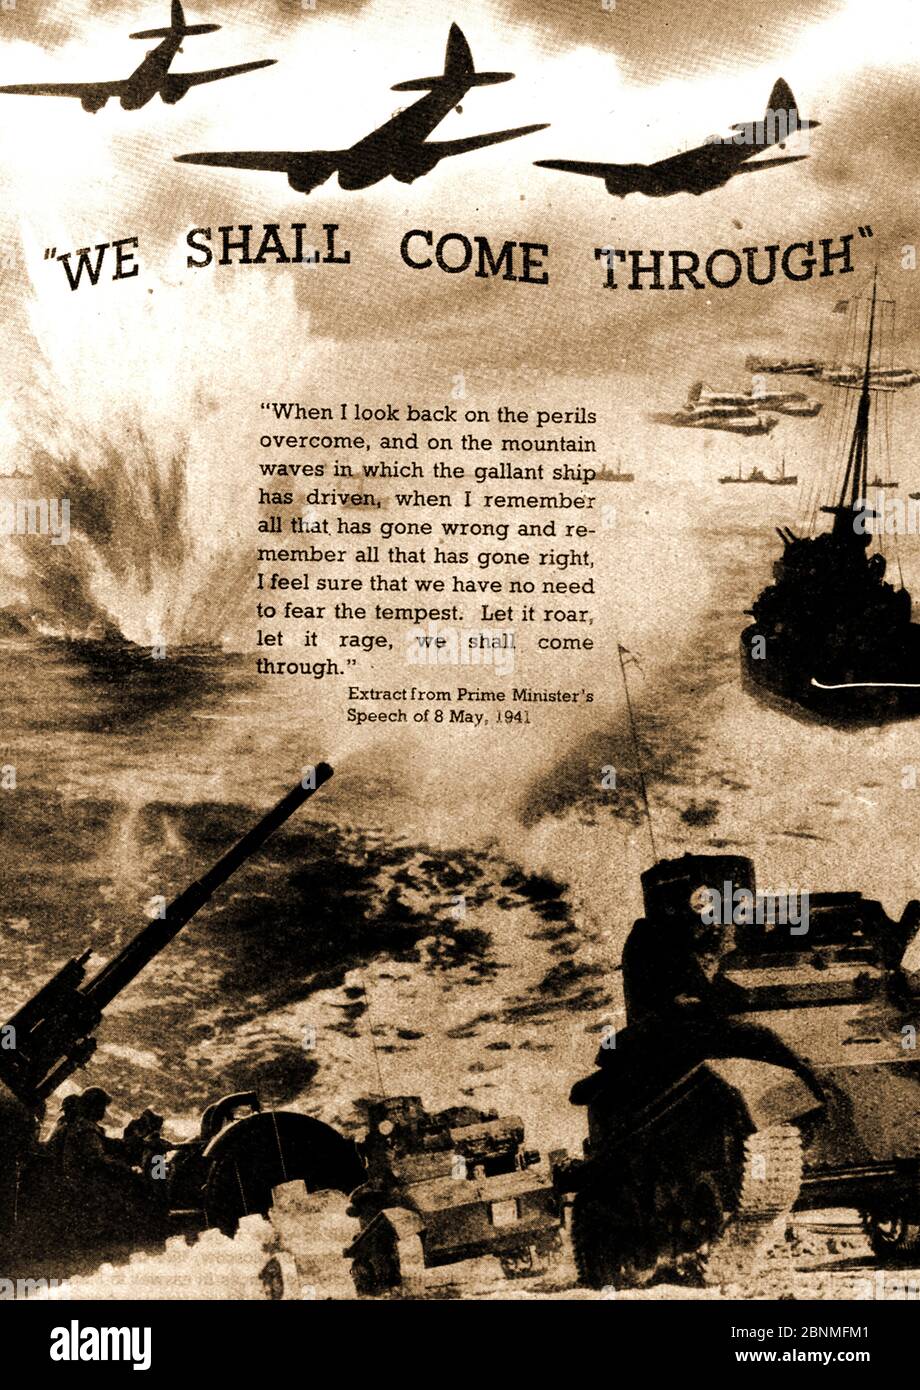 WWII - un'immagine stampata del 1941 che mostra una commemorazione pittorica del discorso di Winston Churchill dell'8 maggio 1941 - 'arriveremo' Foto Stock